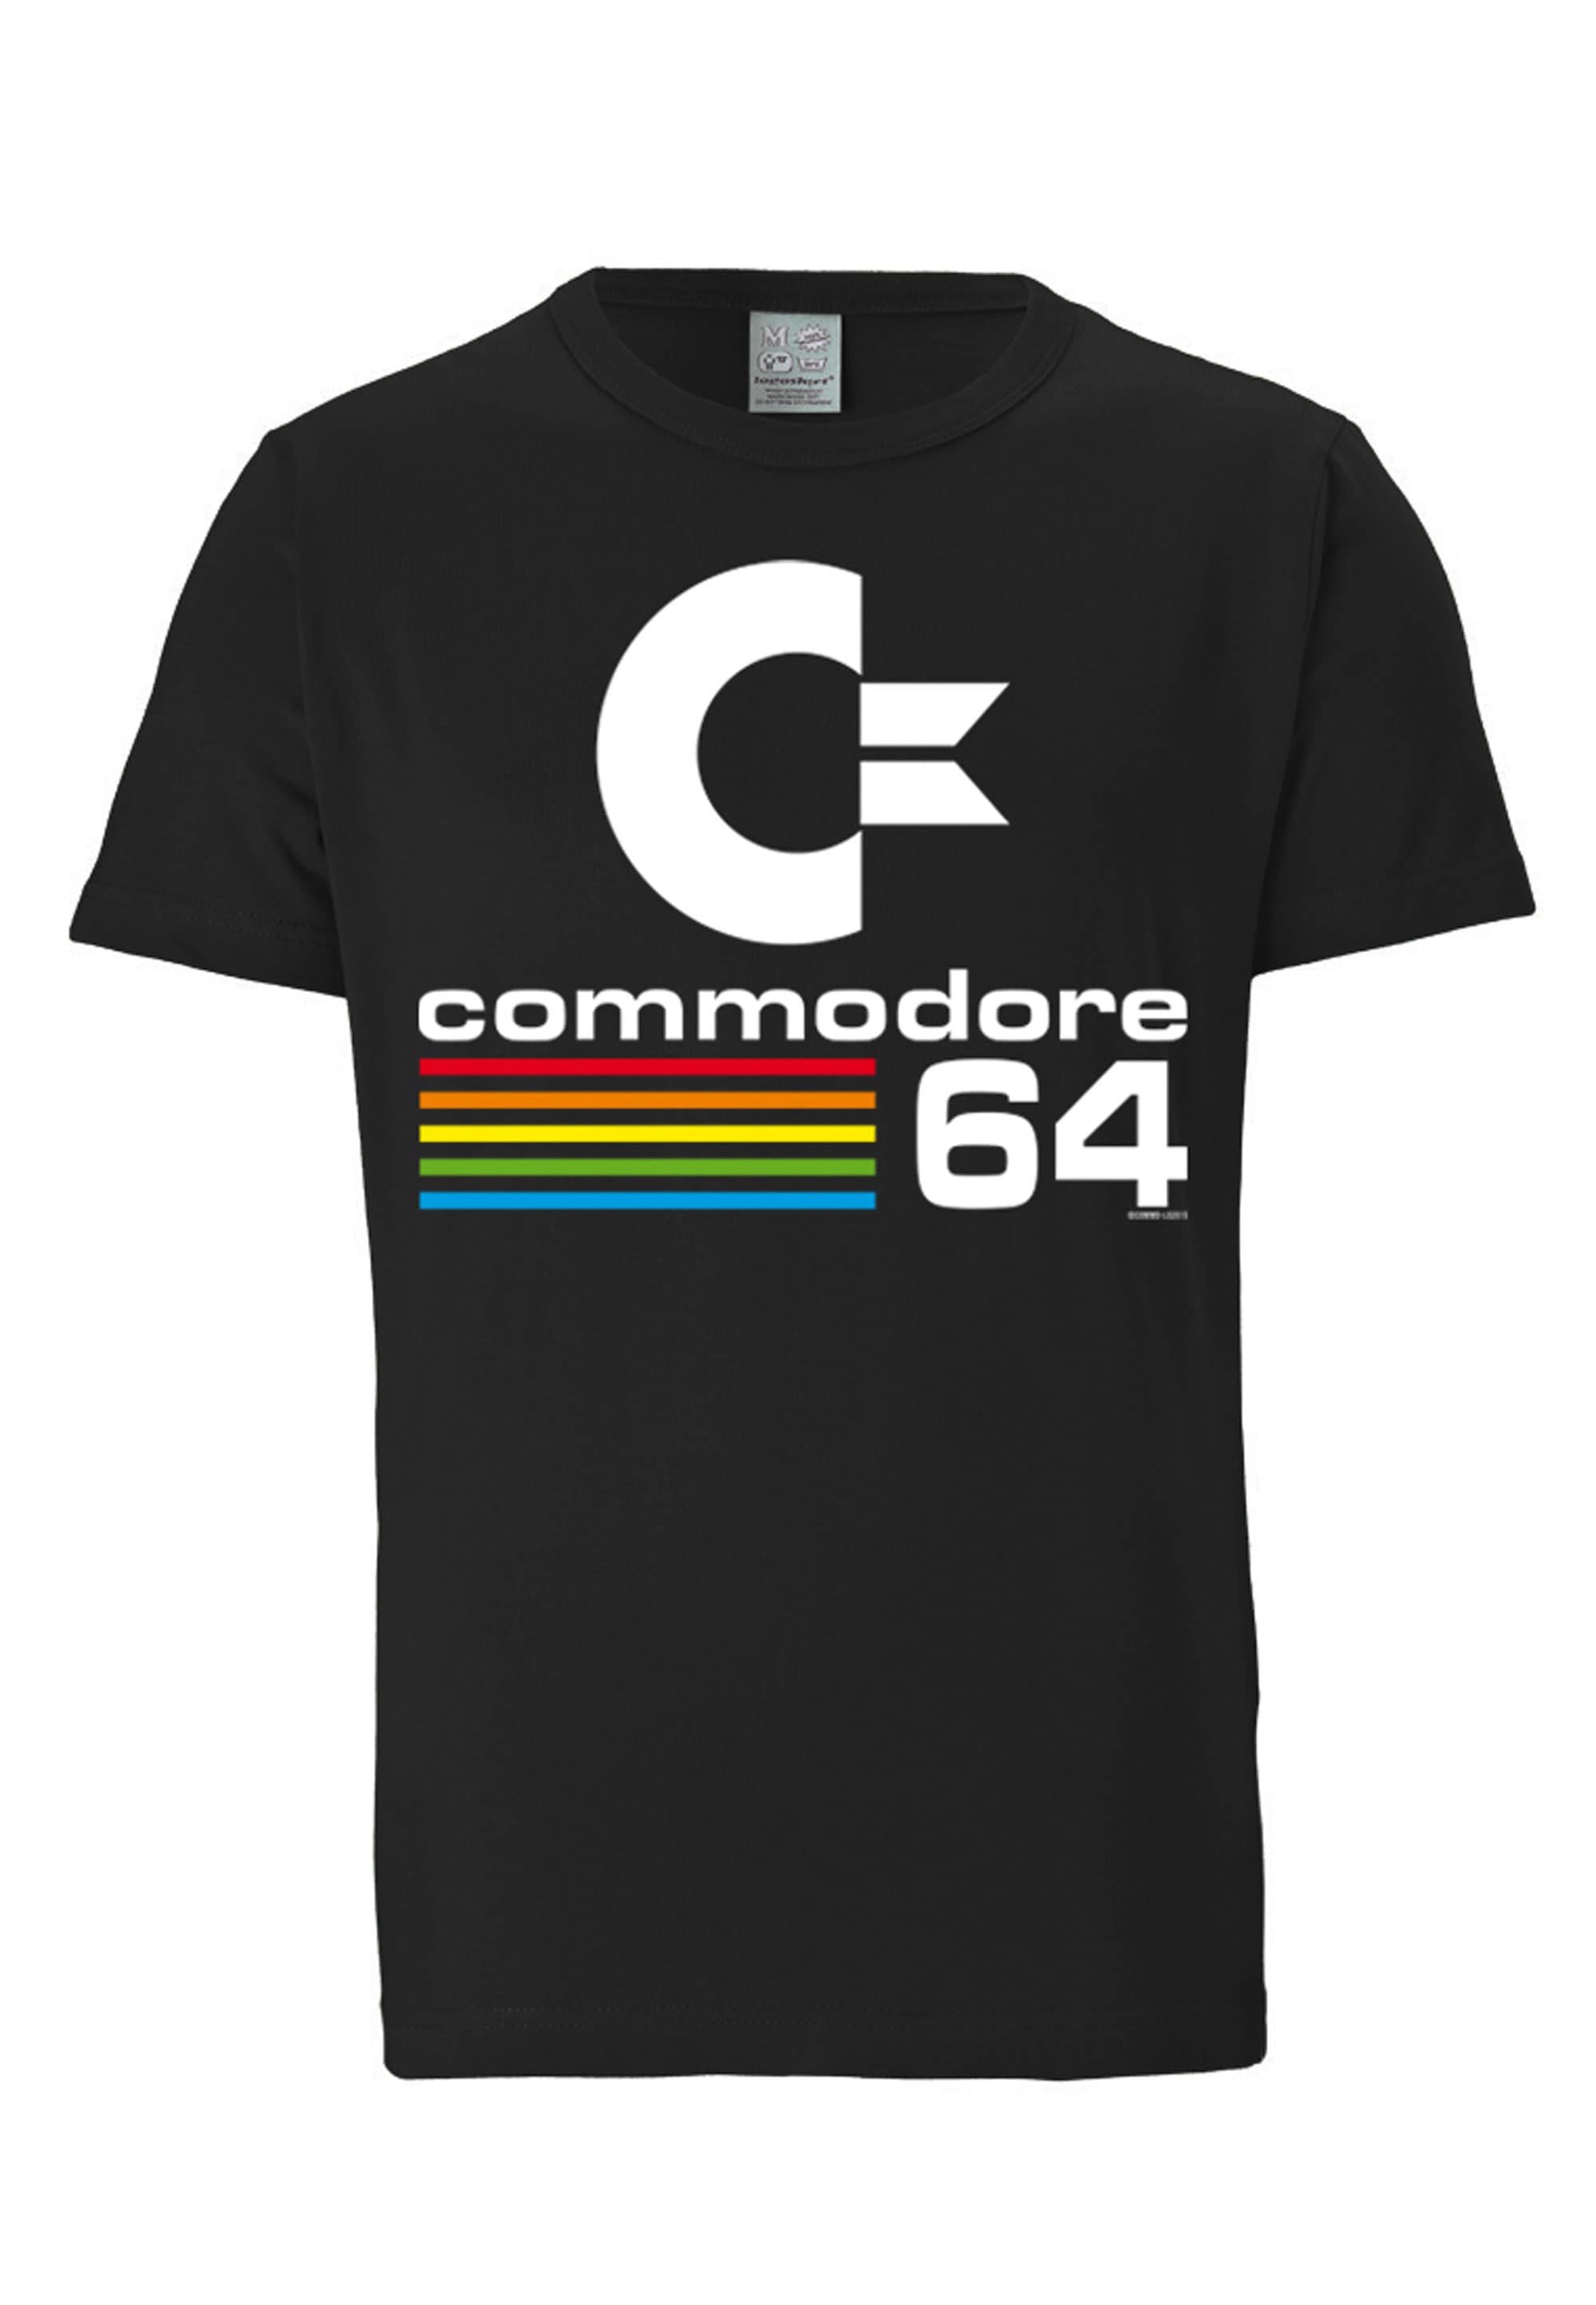 LOGOSHIRT T-Shirt "Commodore C64", mit lizenziertem Originaldesign günstig online kaufen